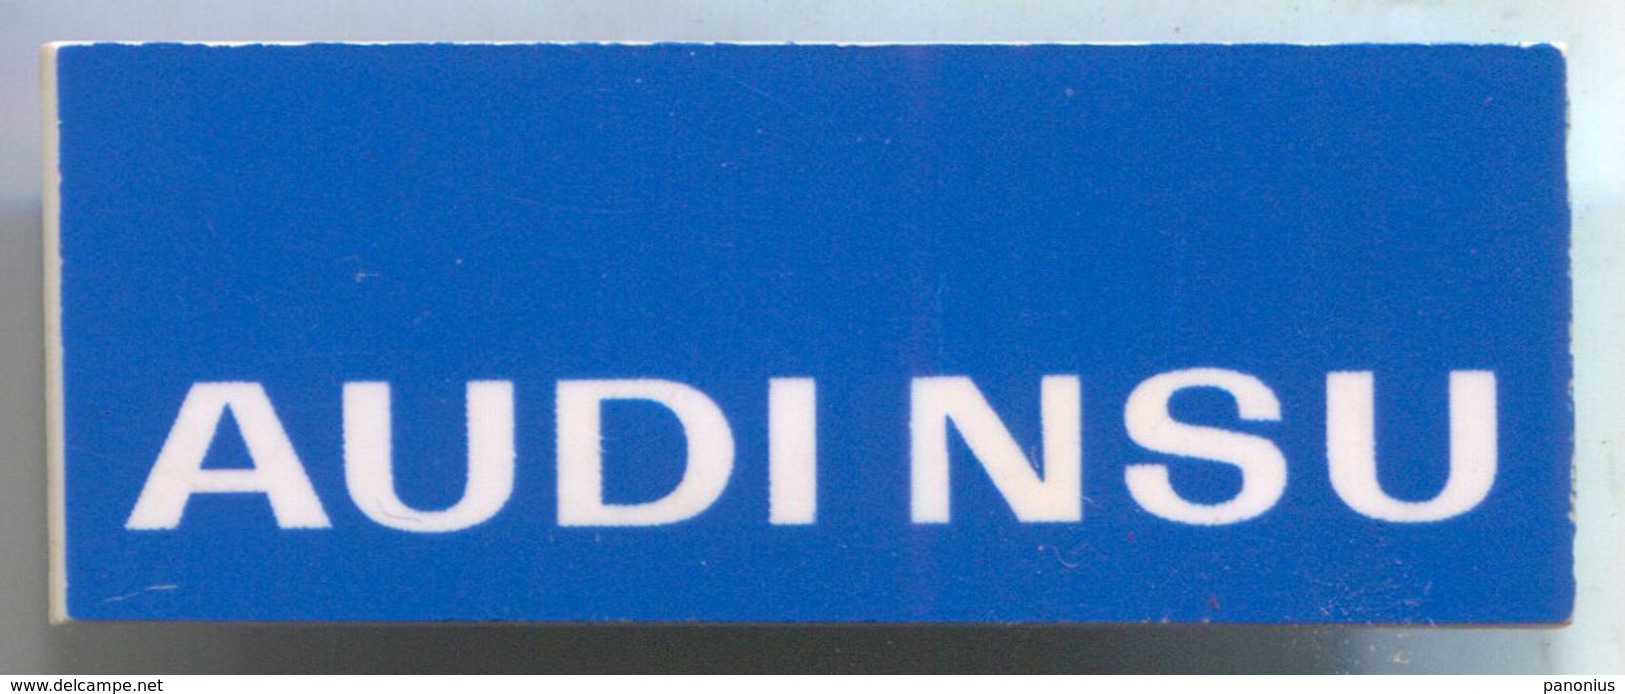 AUDI NSU - Car, Auto, Automotive, Vintage Pin, Badge, Abzeichen, D 40 X 15 Mm - Audi